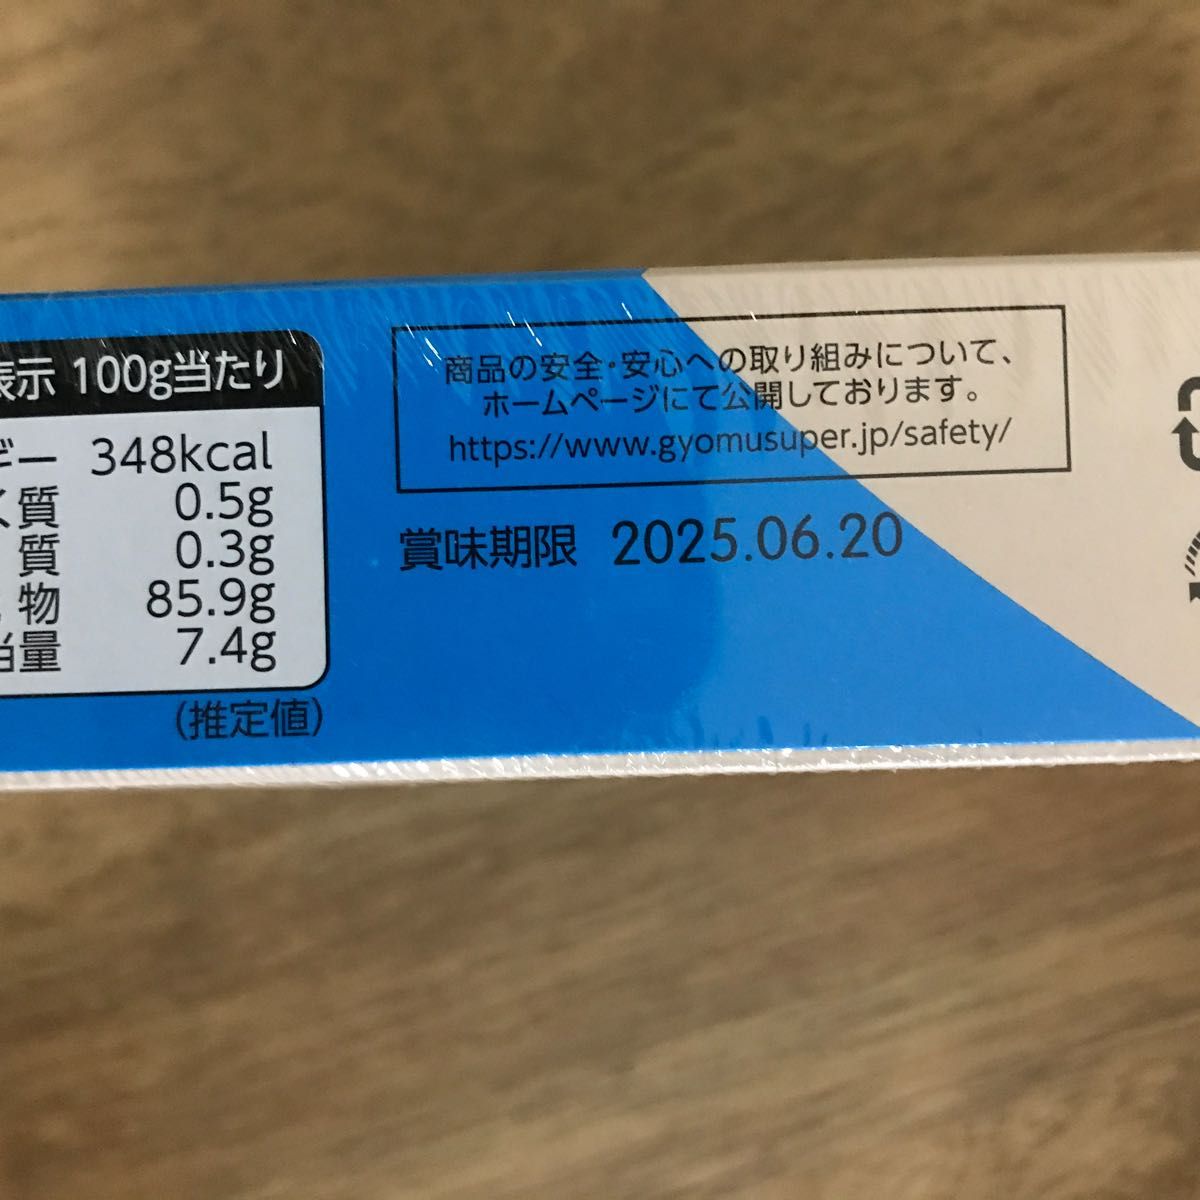 梅花 (MEI HUA) えびせんの素 227g 赤 龍蝦片 シャーペン krupuk udang クルプック｜PayPayフリマ